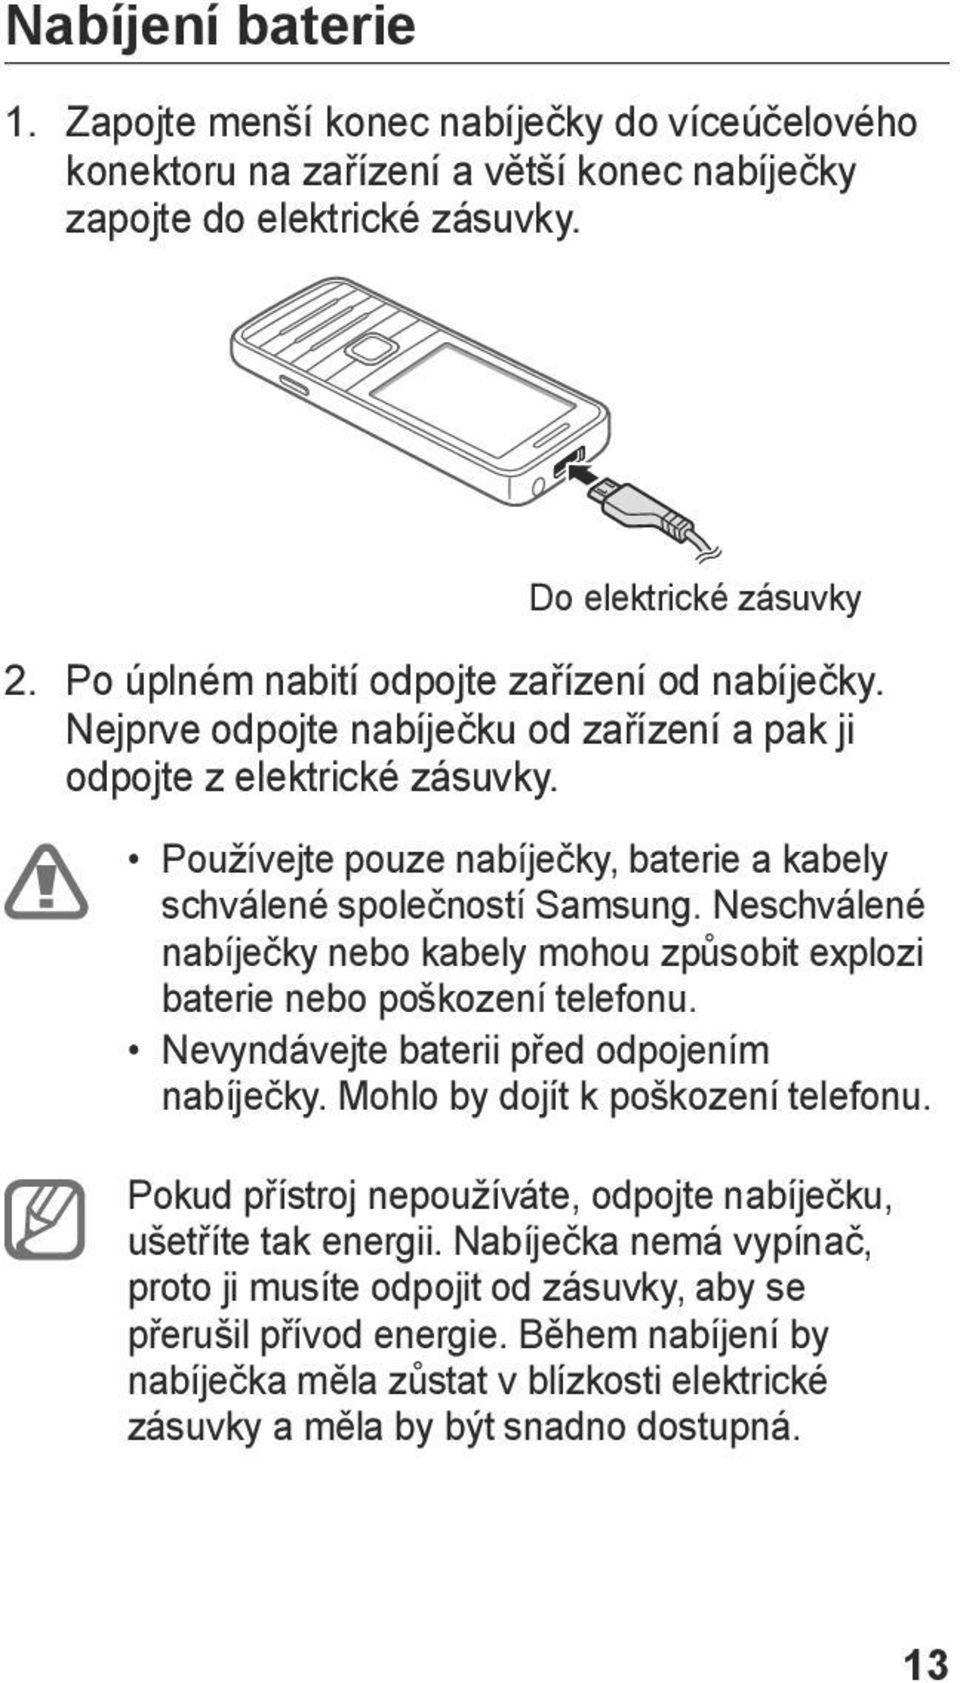 Neschválené nabíječky nebo kabely mohou způsobit explozi baterie nebo poškození telefonu. Nevyndávejte baterii před odpojením nabíječky. Mohlo by dojít k poškození telefonu.